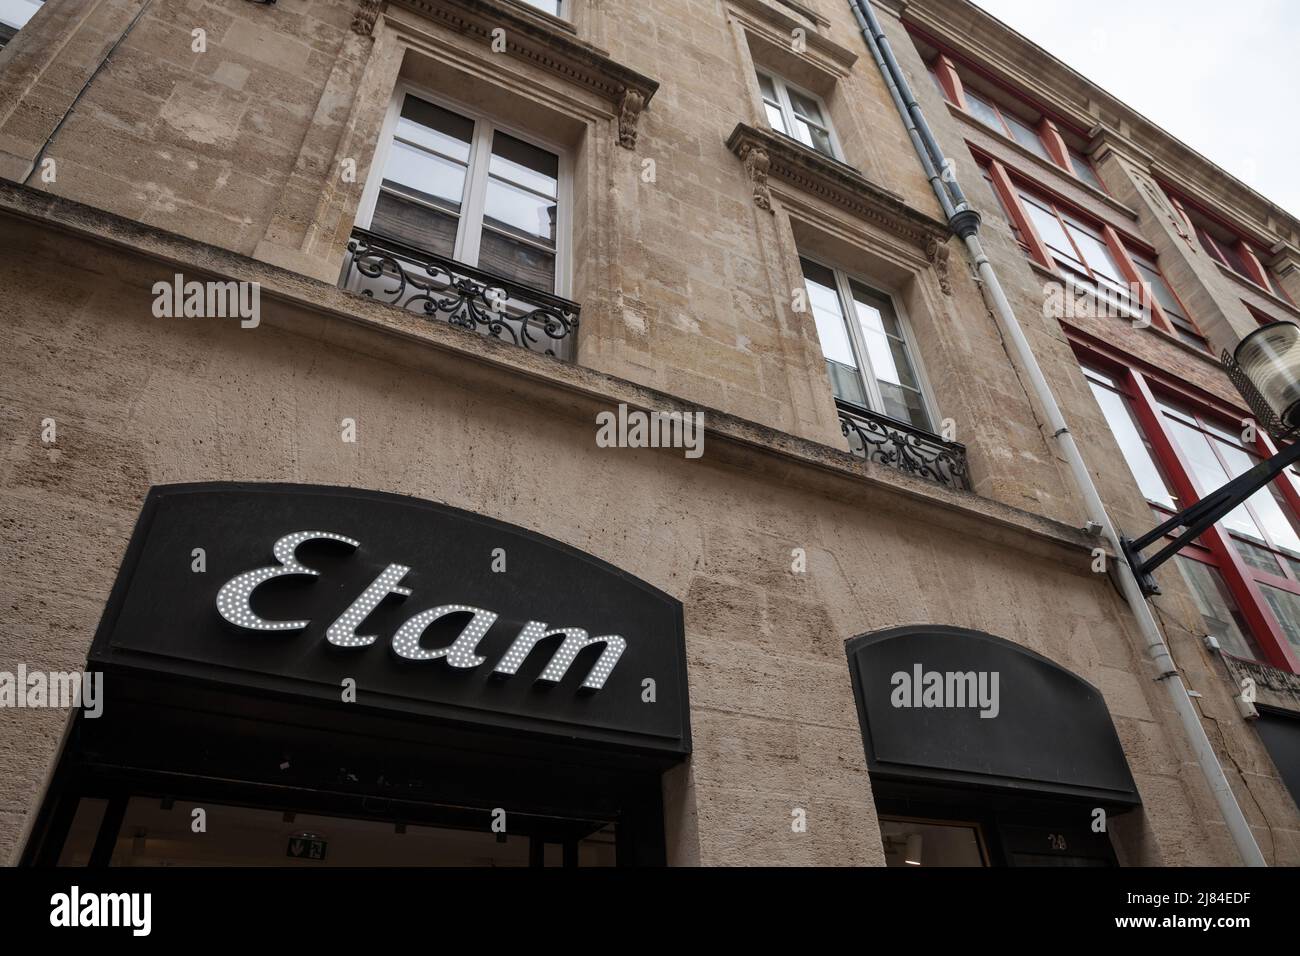 Imagen de un signo de Etam en su tienda en Burdeos, Francia. Etam es una empresa francesa en la industria textil, es un importante actor en Francia en la fi Foto de stock